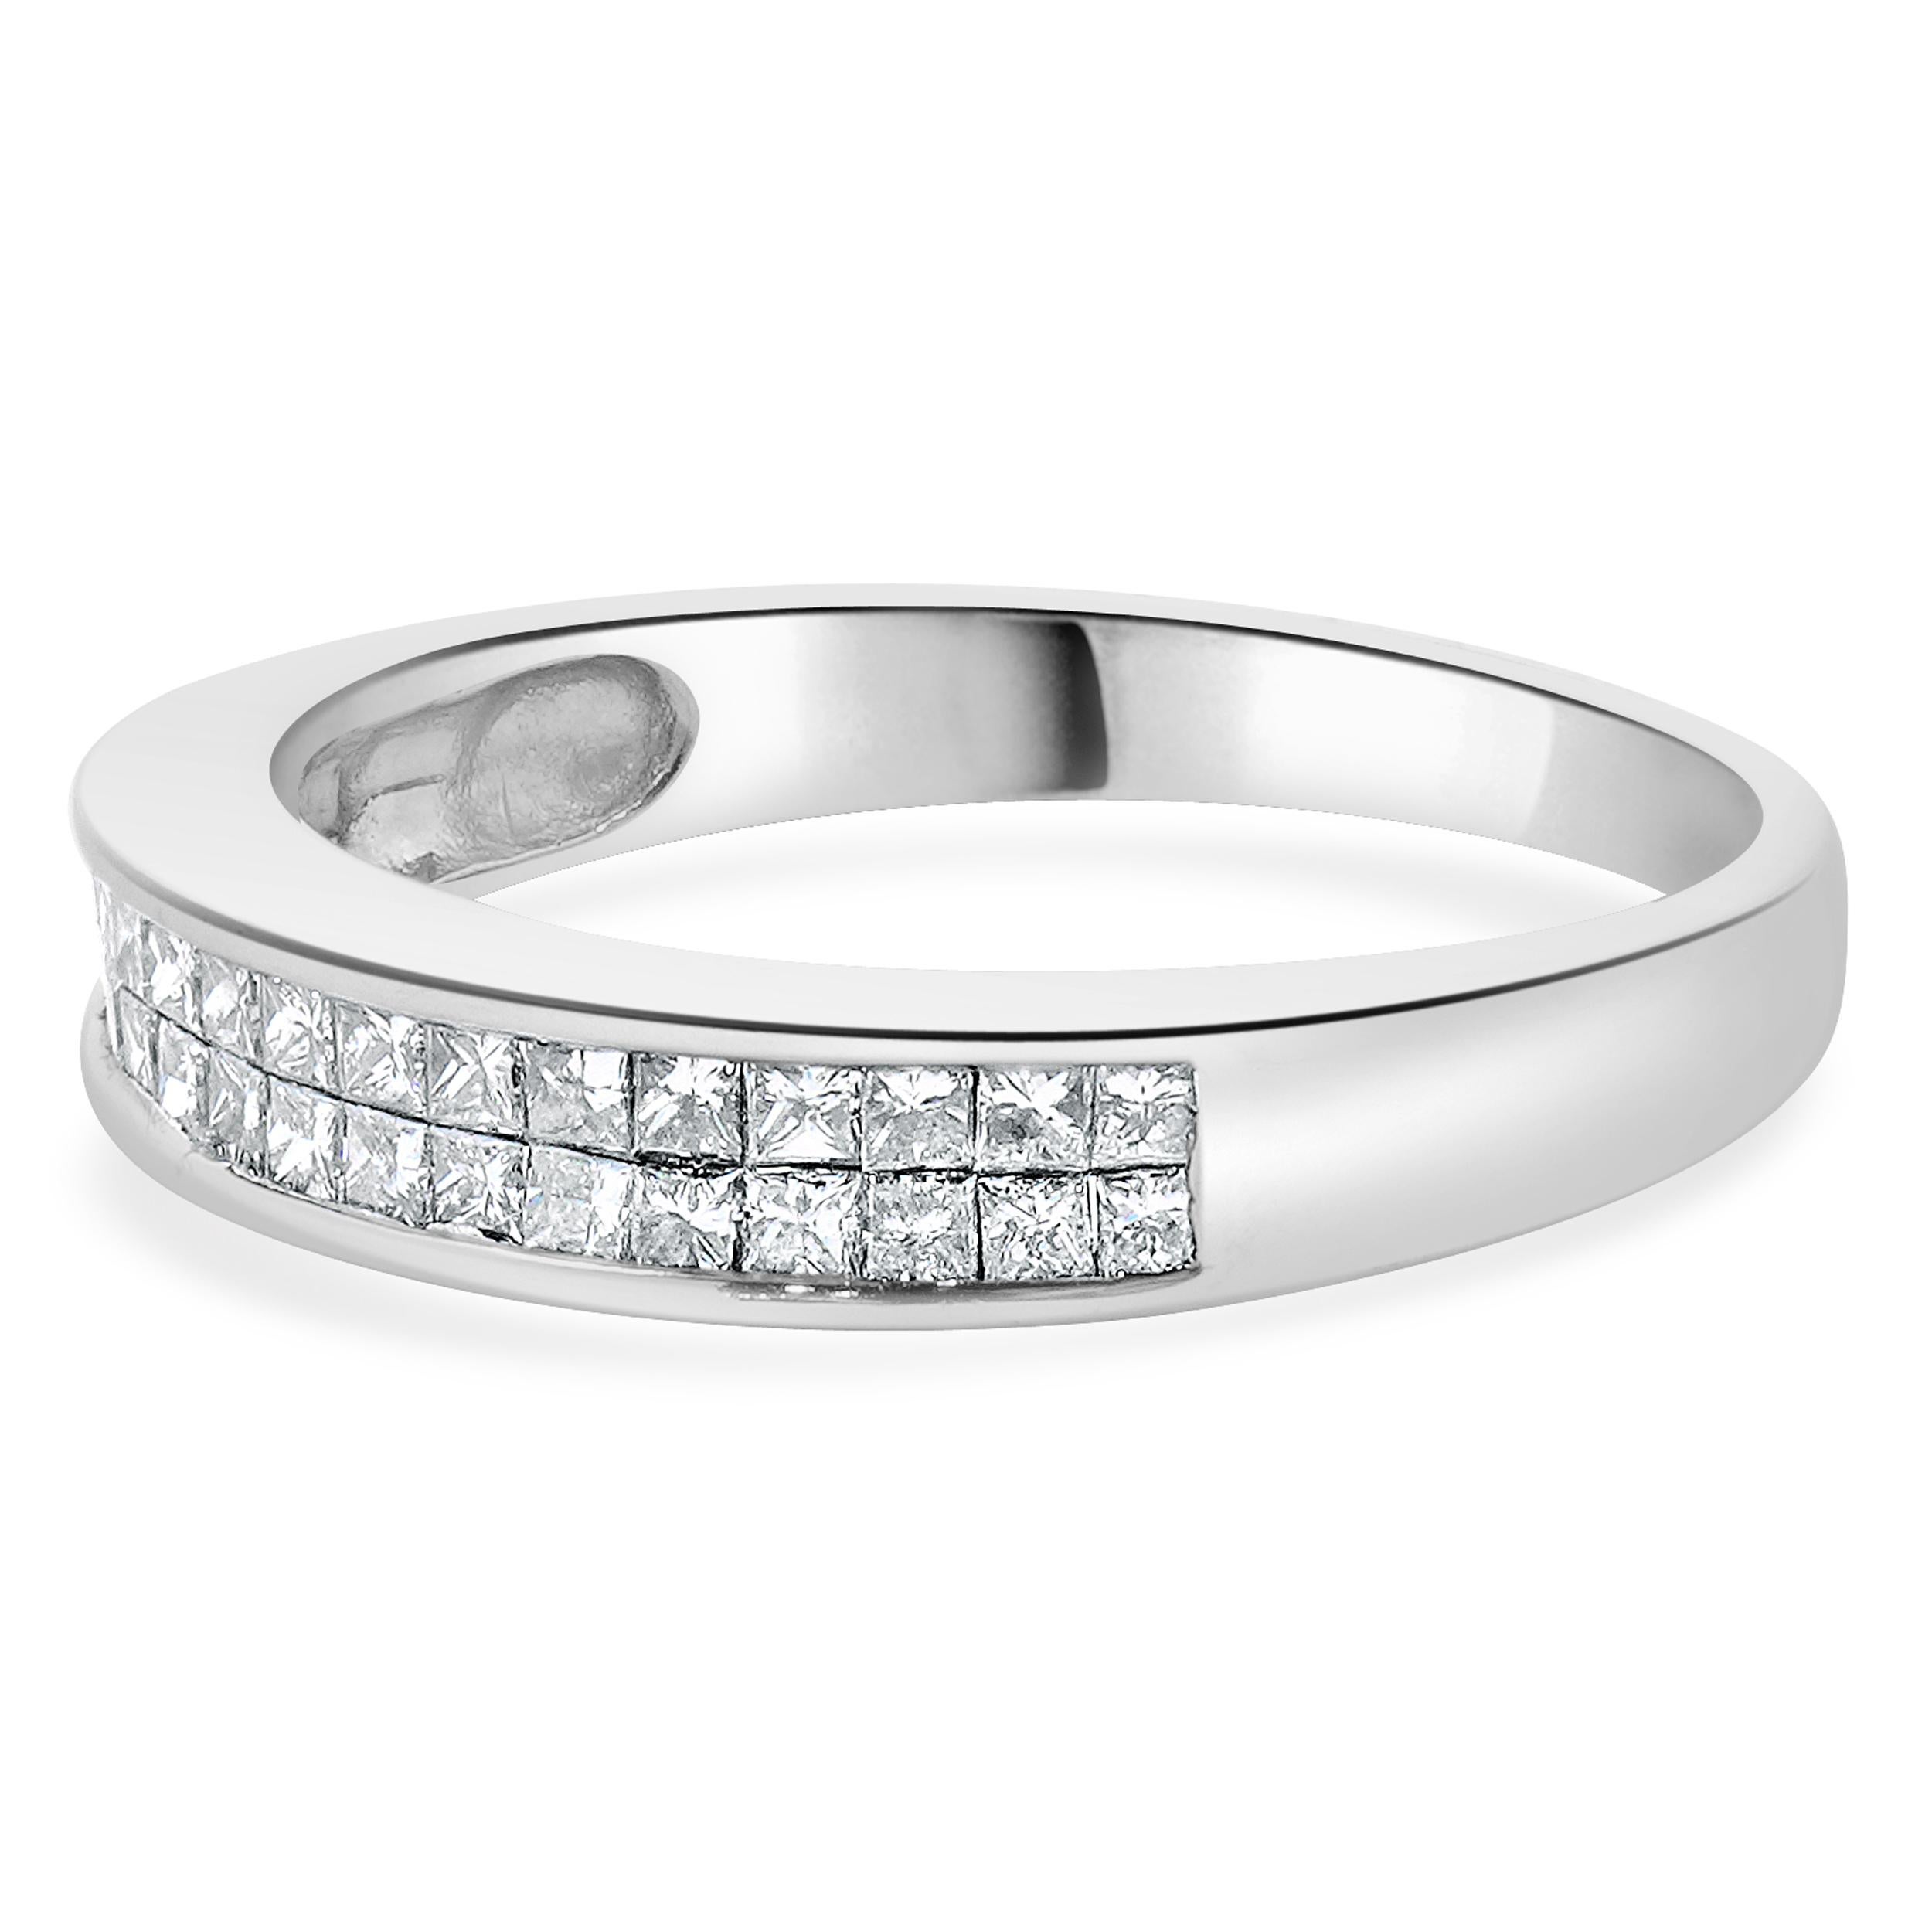 Concepteur : Custom
Matériau : Or blanc 14K
Diamants : 36 diamants de taille princesse = 0,90cttw
Couleur : H
Clarté : SI1-2
Taille : 7.5 tailles disponibles 
Dimensions : les anneaux mesurent 4 mm de large
Poids : 3.30 grammes